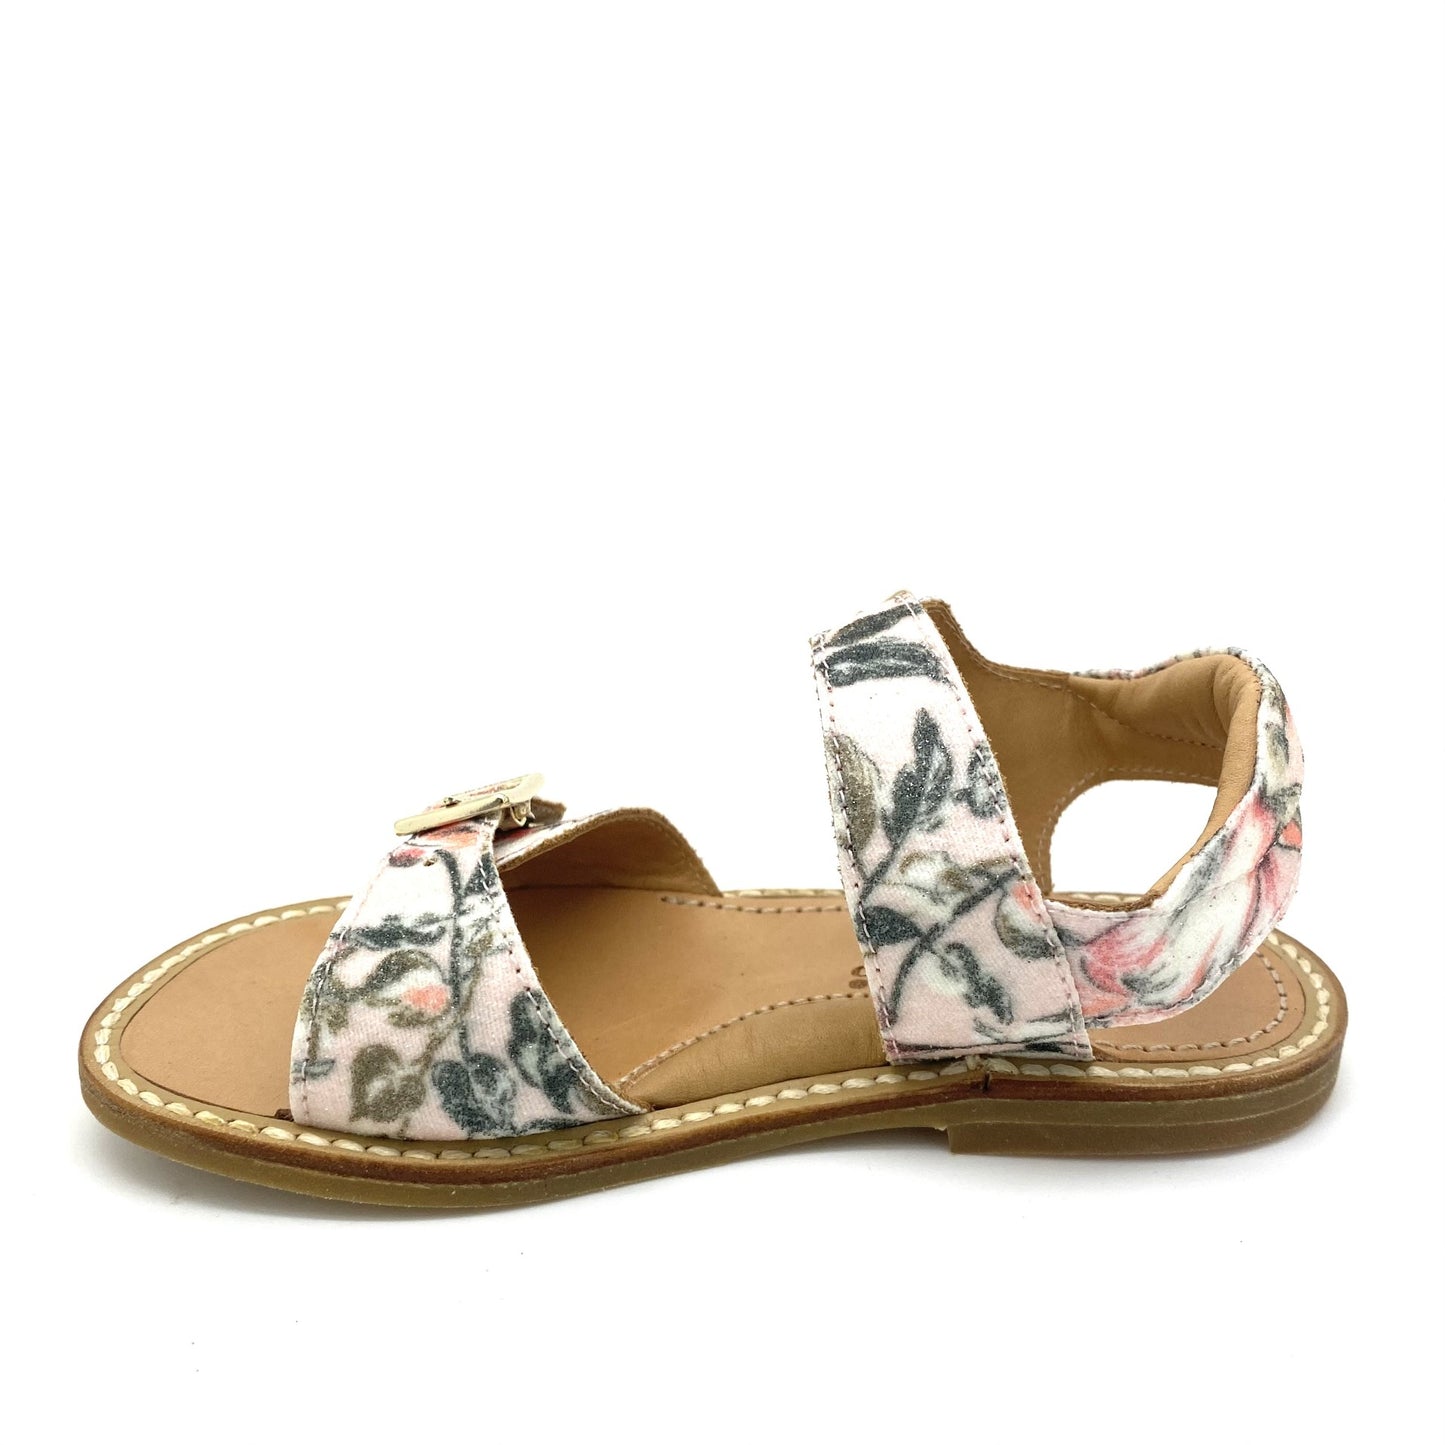 Zecchino D'oro sandaal met bloempjes.